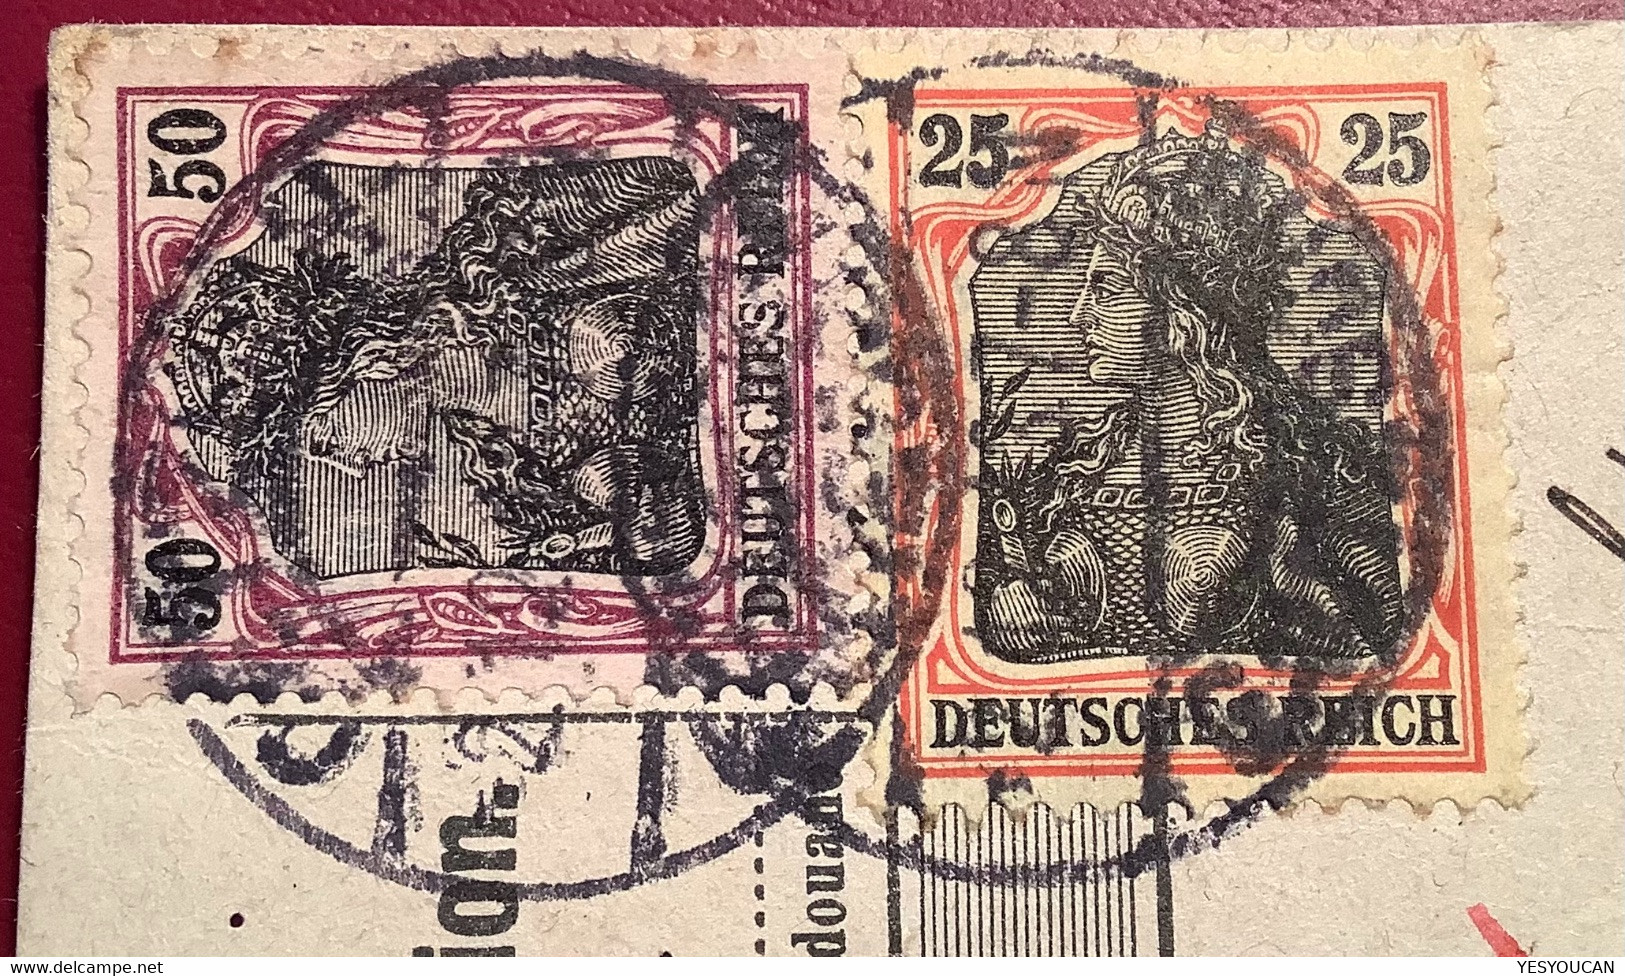 OETZSCH GAUTZSCH LEIPZIG 1913 Germania Paketkarte A.Hannes Fenster Dekoration>Droguerie Nyon CH (DR Colis Postal - Covers & Documents